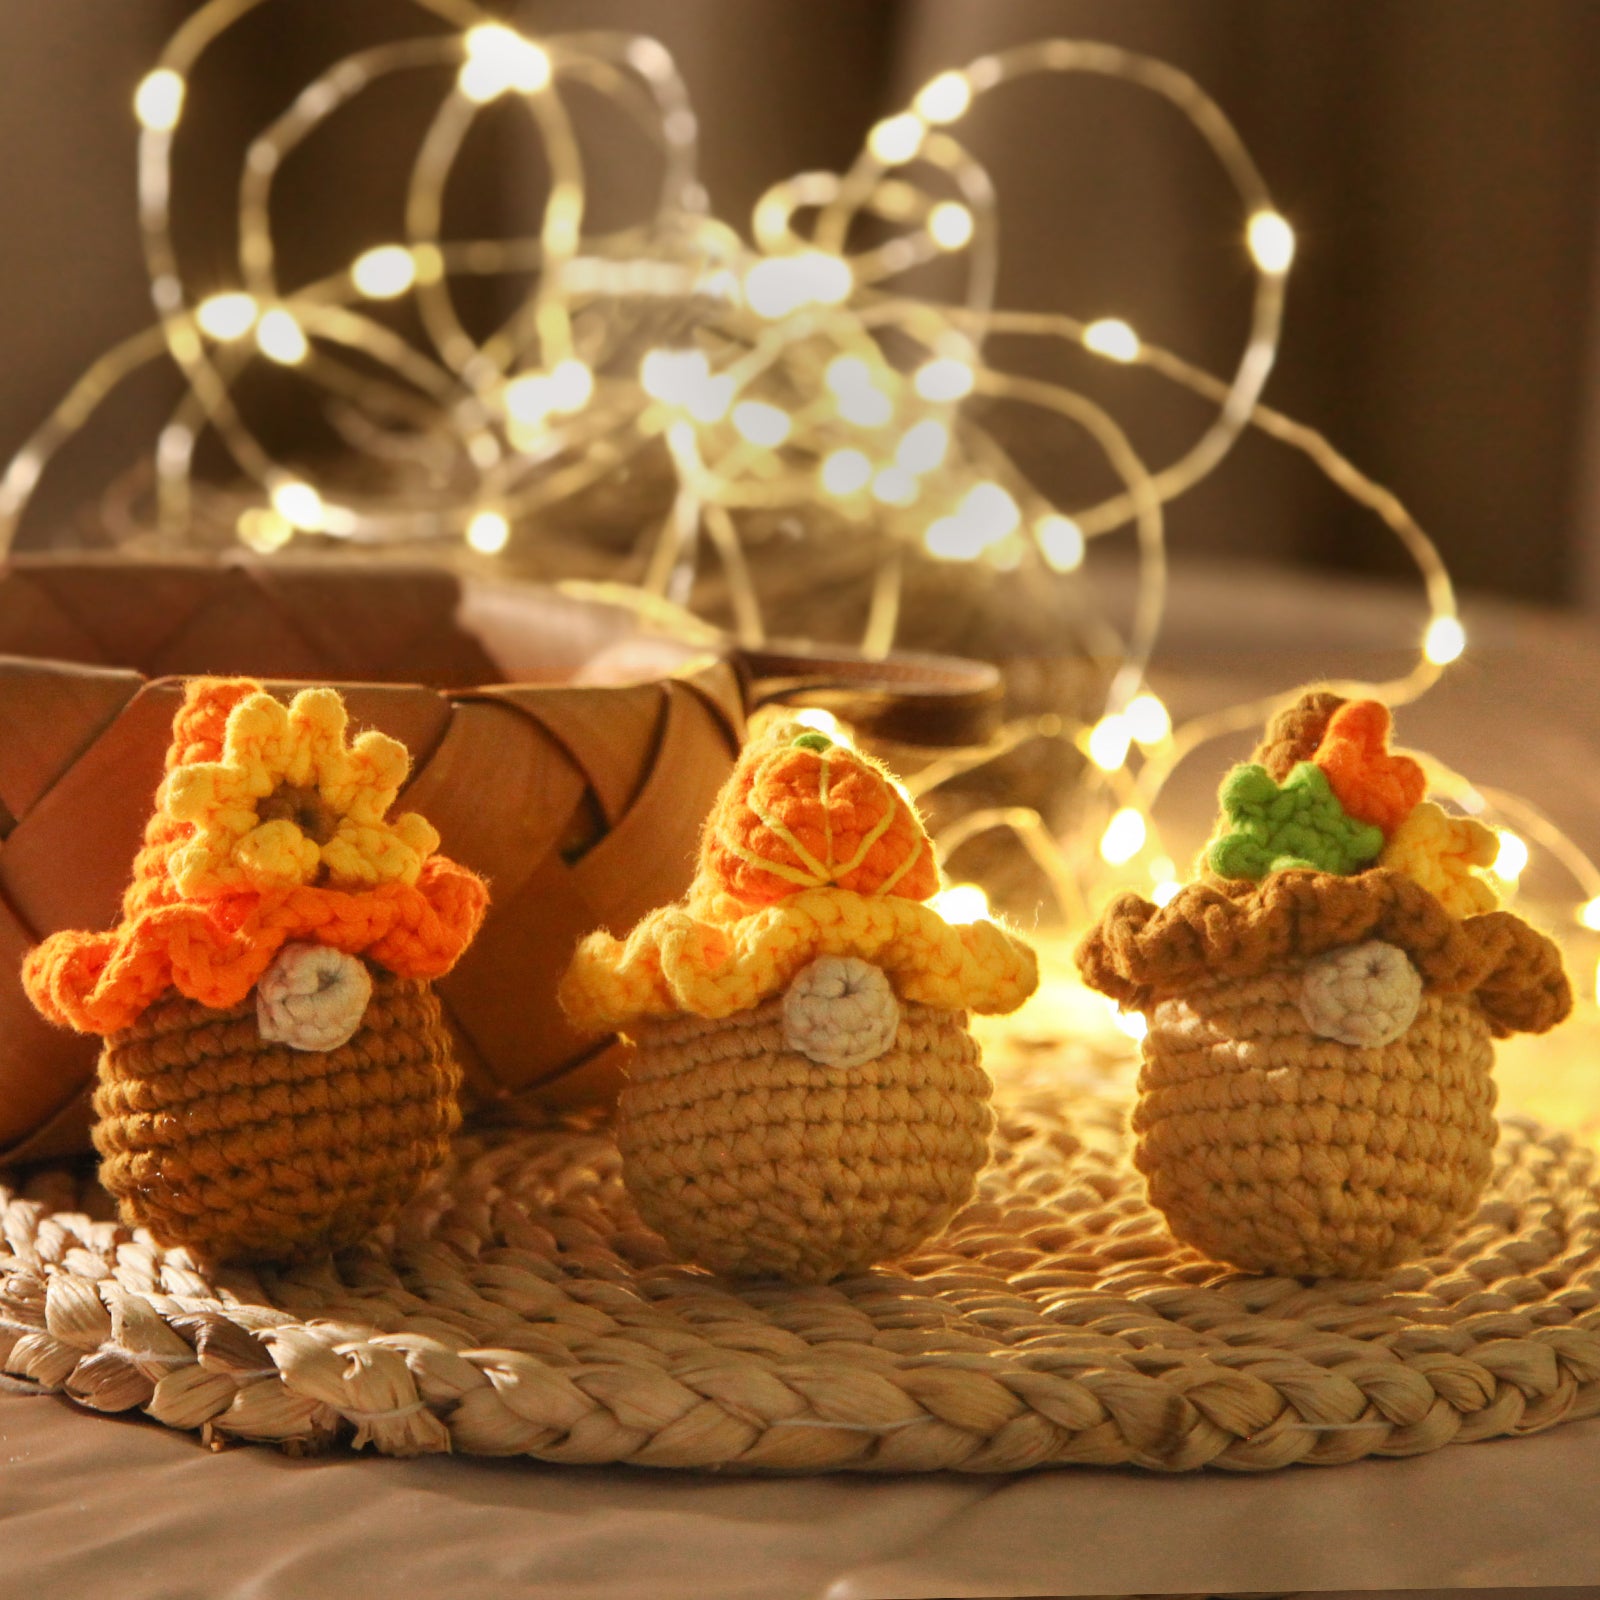 CROCHET BOX Crochet Kit for Beginners—— Autumn Bliss Trio